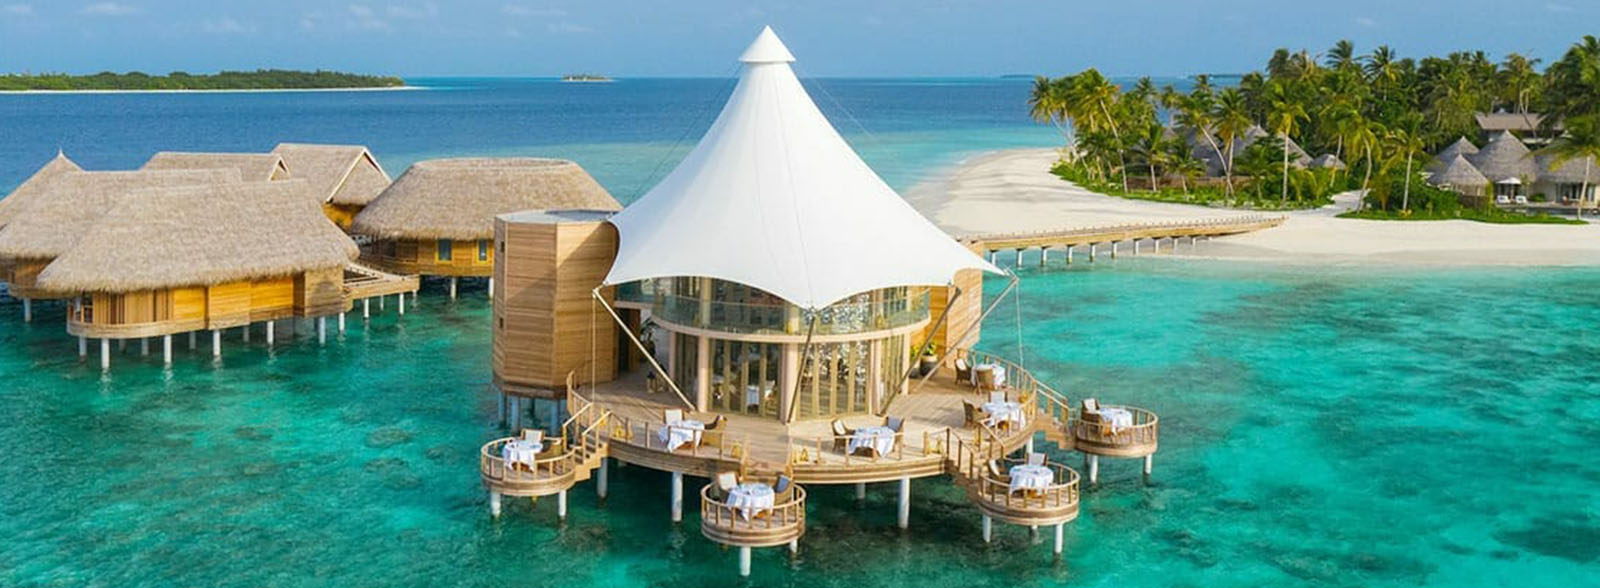 The Nautilus Maldives Restaurant